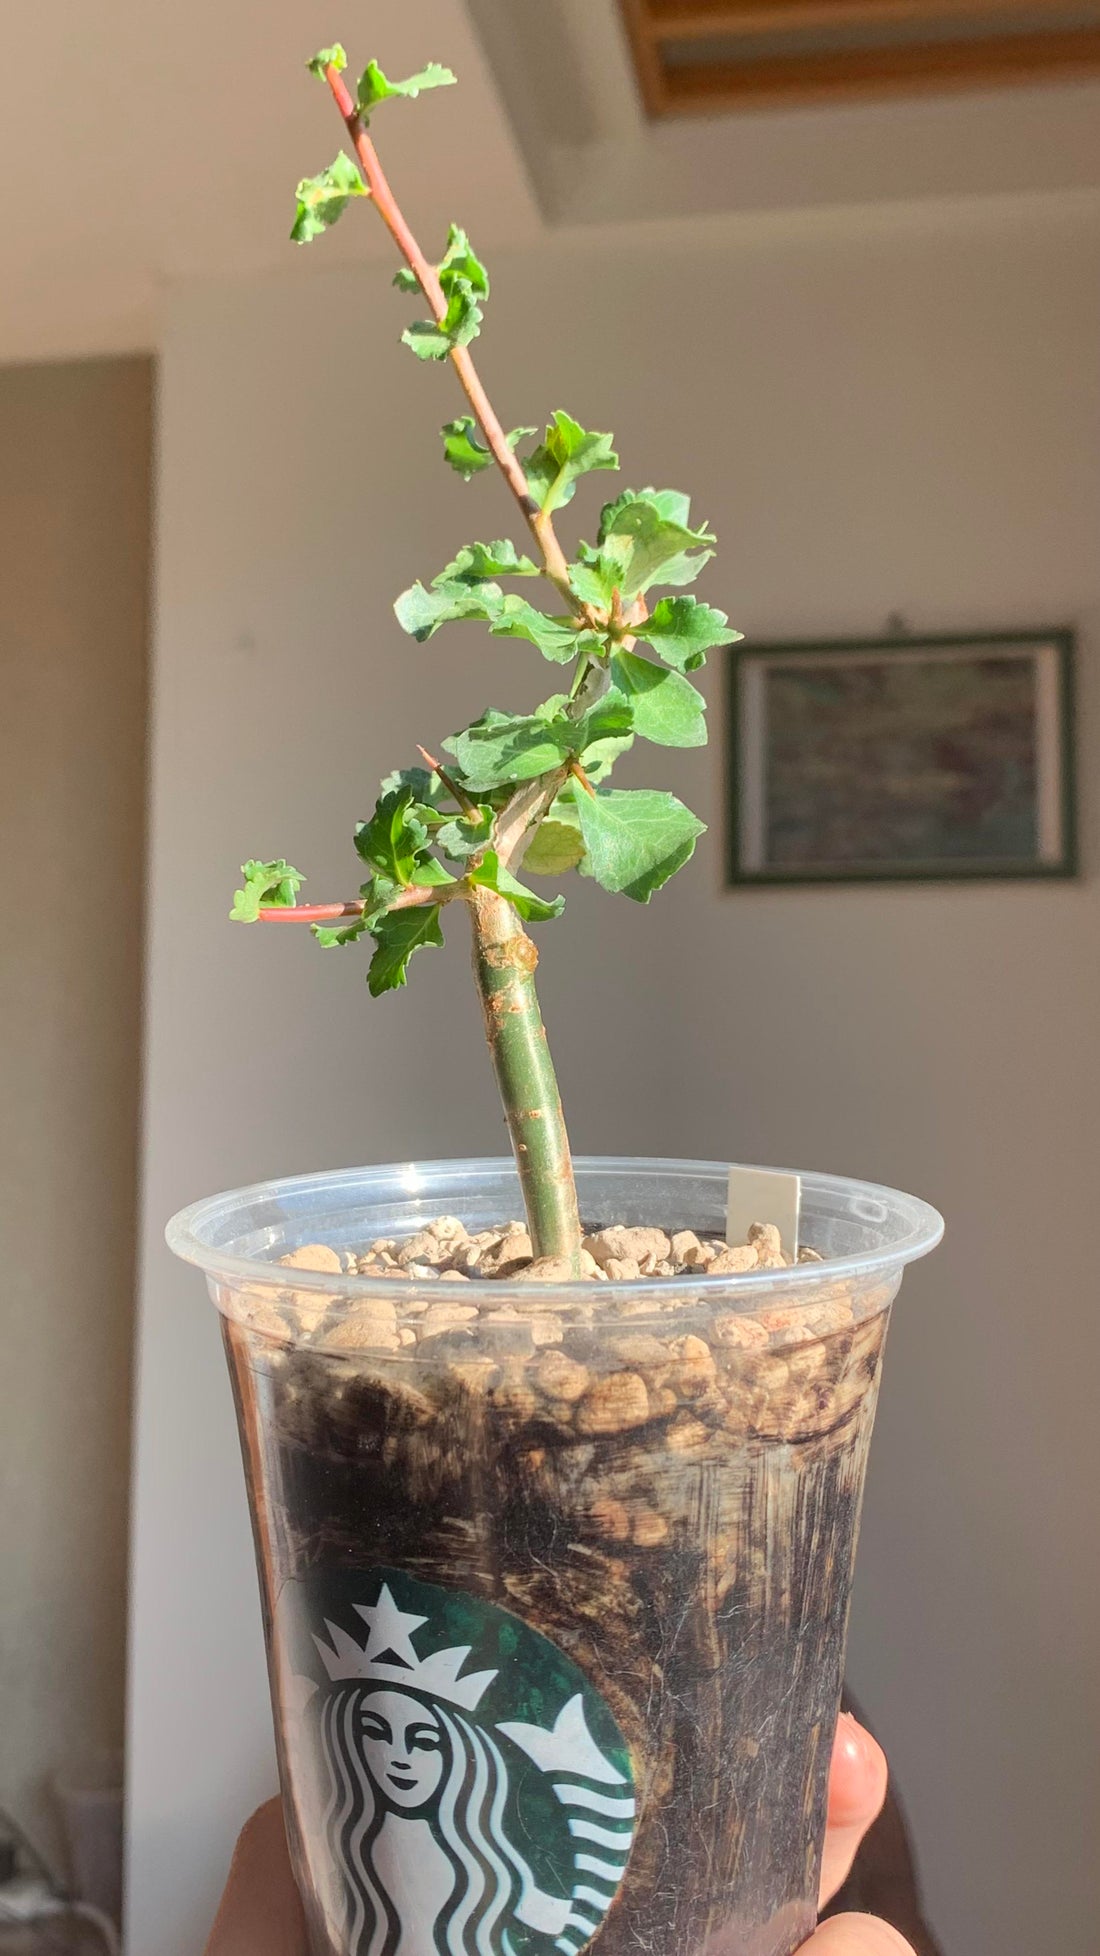 Commiphora Wightii Guggul Myrrh Tree Seeds, cultivez votre propre oasis médicinale